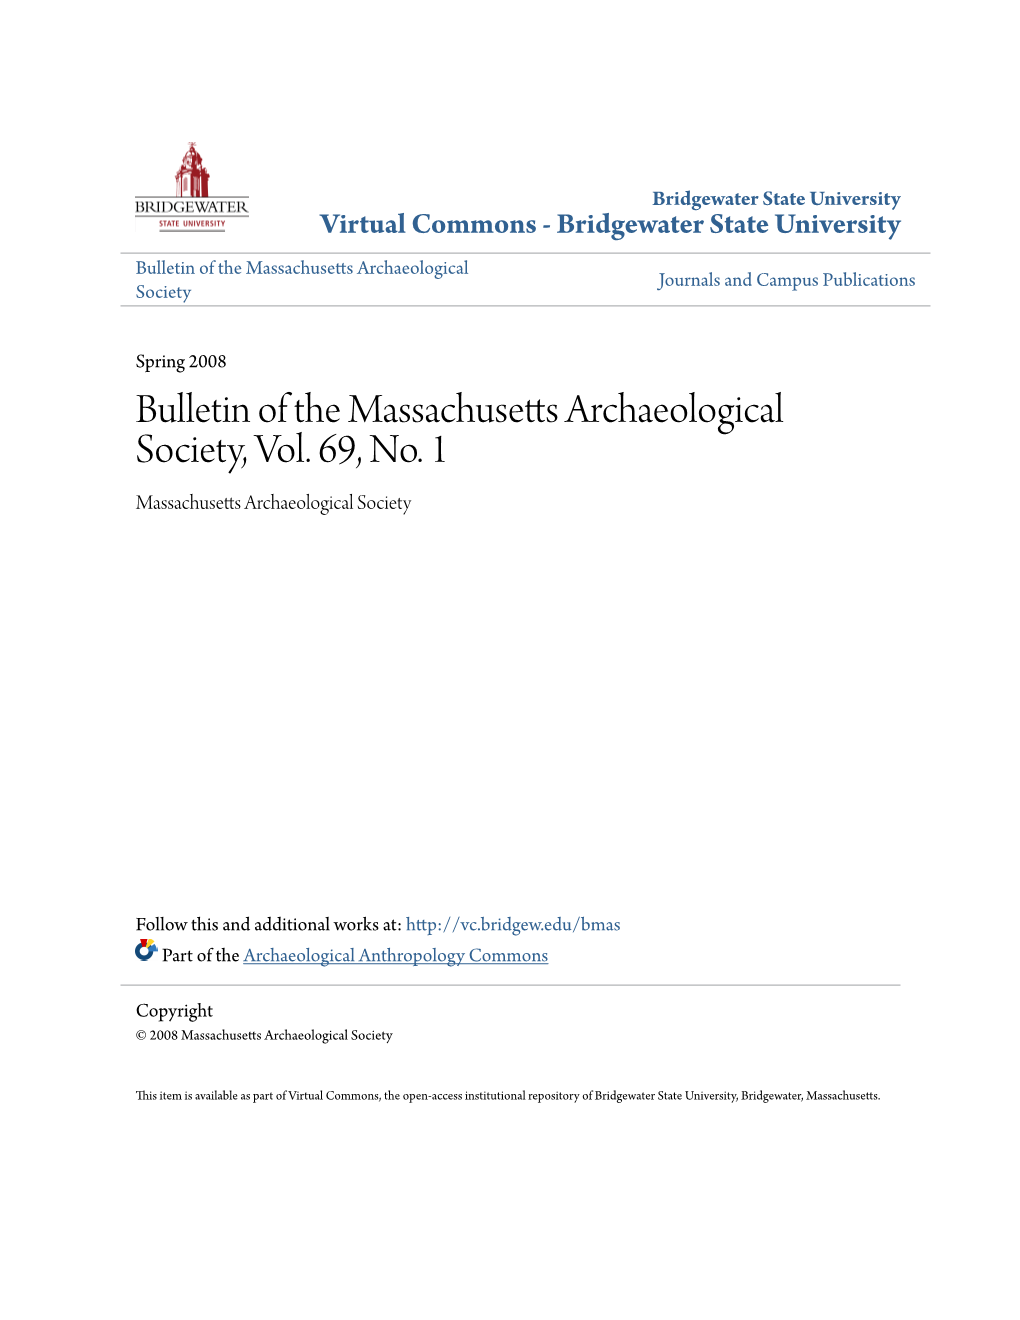 Bulletin of the Massachusetts Archaeological Society, Vol. 69, No. 1 Massachusetts Archaeological Society